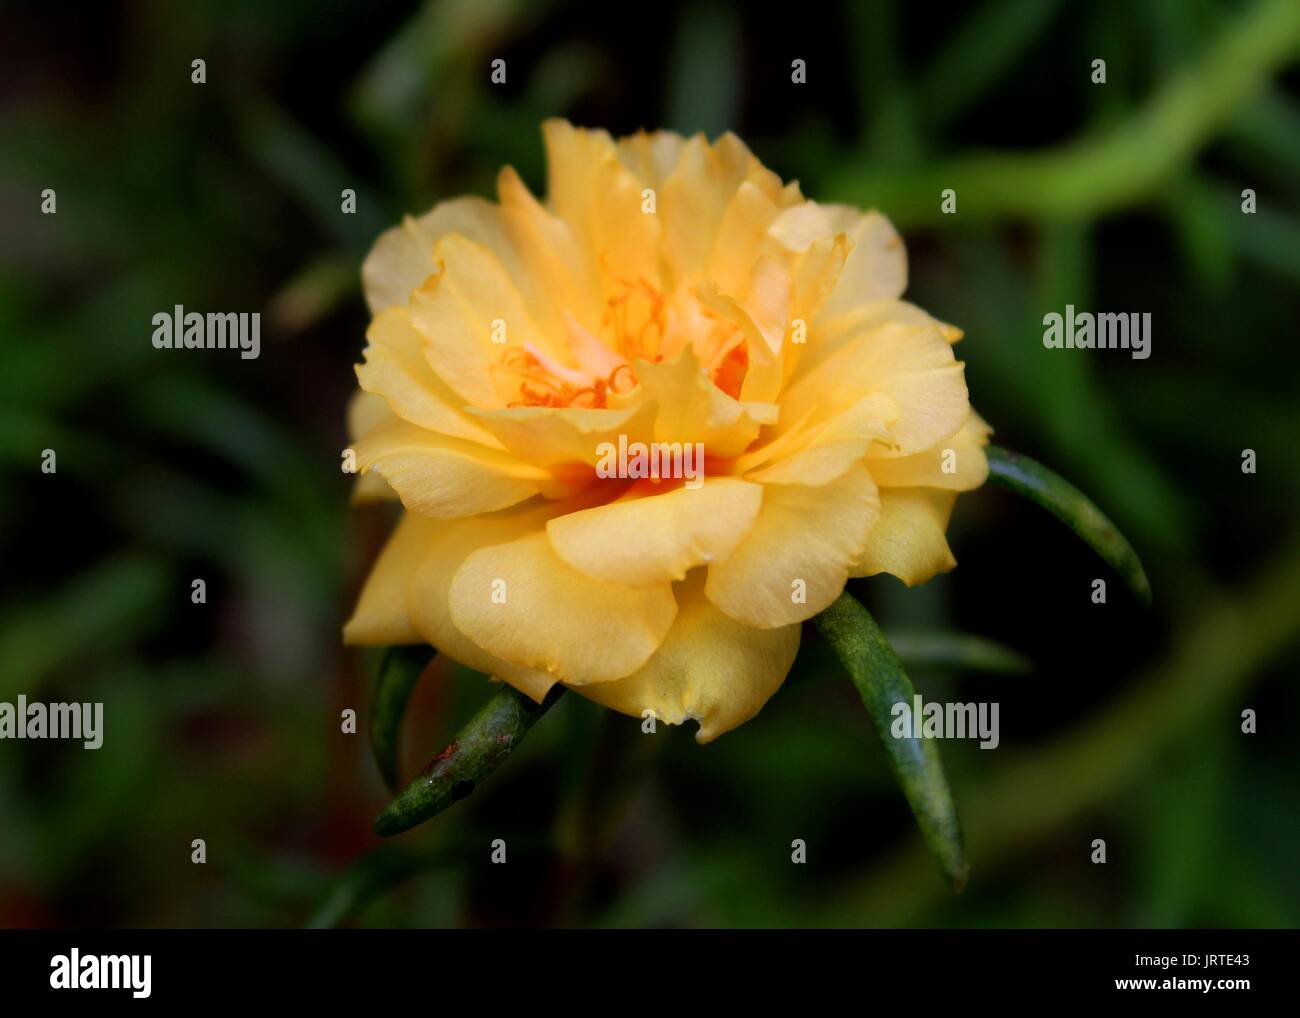 Close-up - Makro - Blick auf eine schöne gelbe Farbe kleine moss Rose - Portulak - Blume gern in einem Haus Garten in Sri Lanka Stockfoto